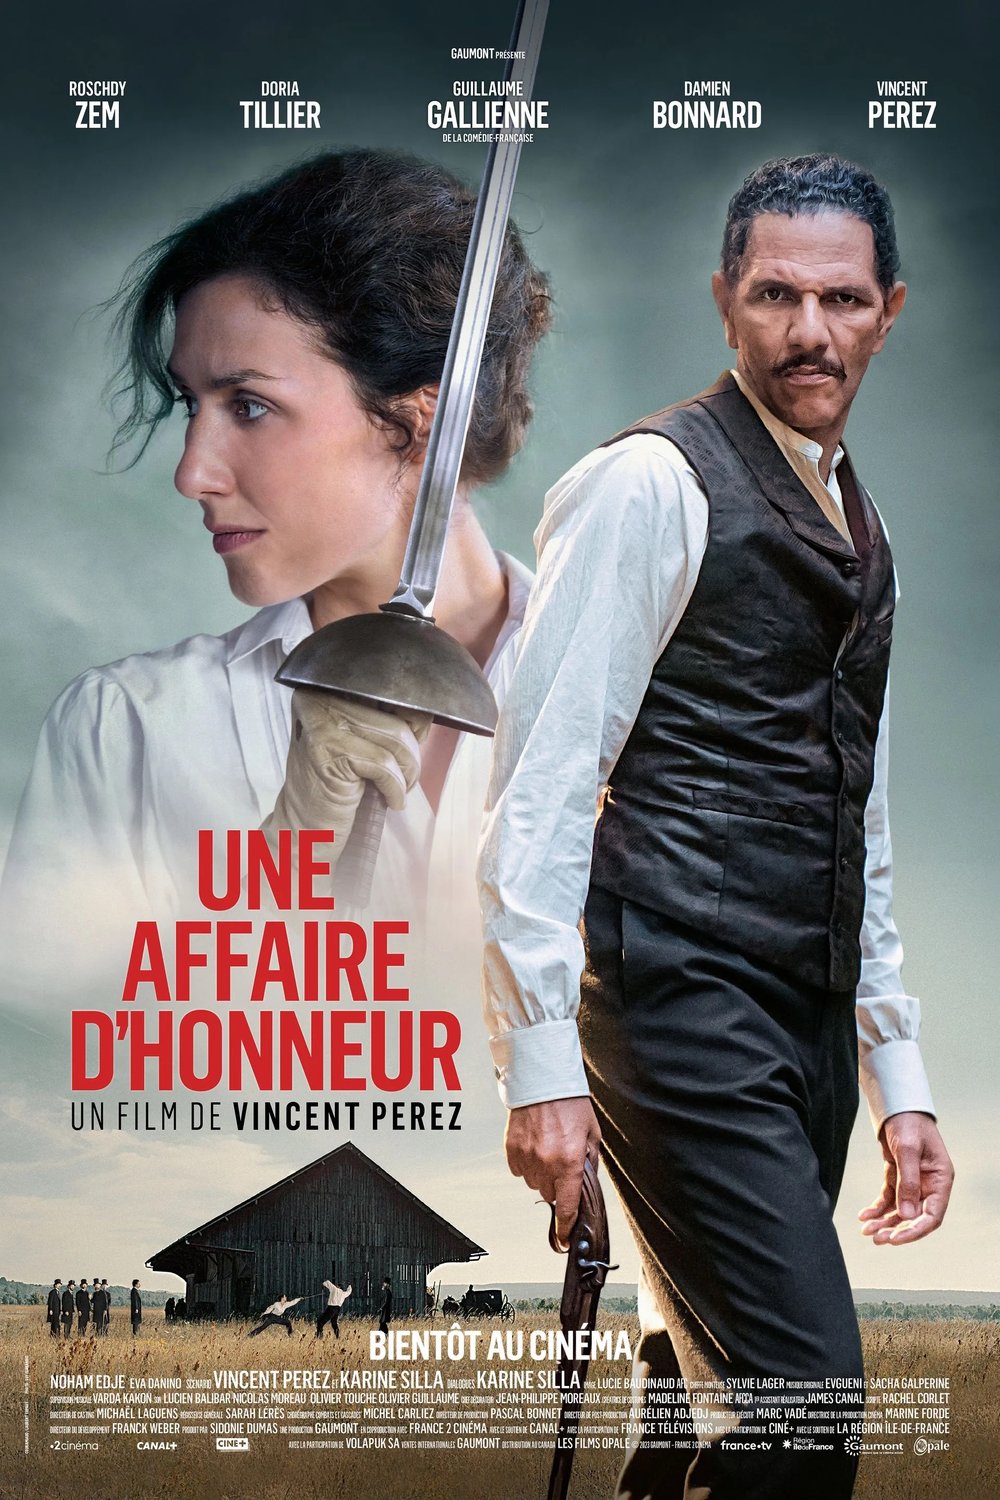 Poster of the movie Une affaire d'honneur